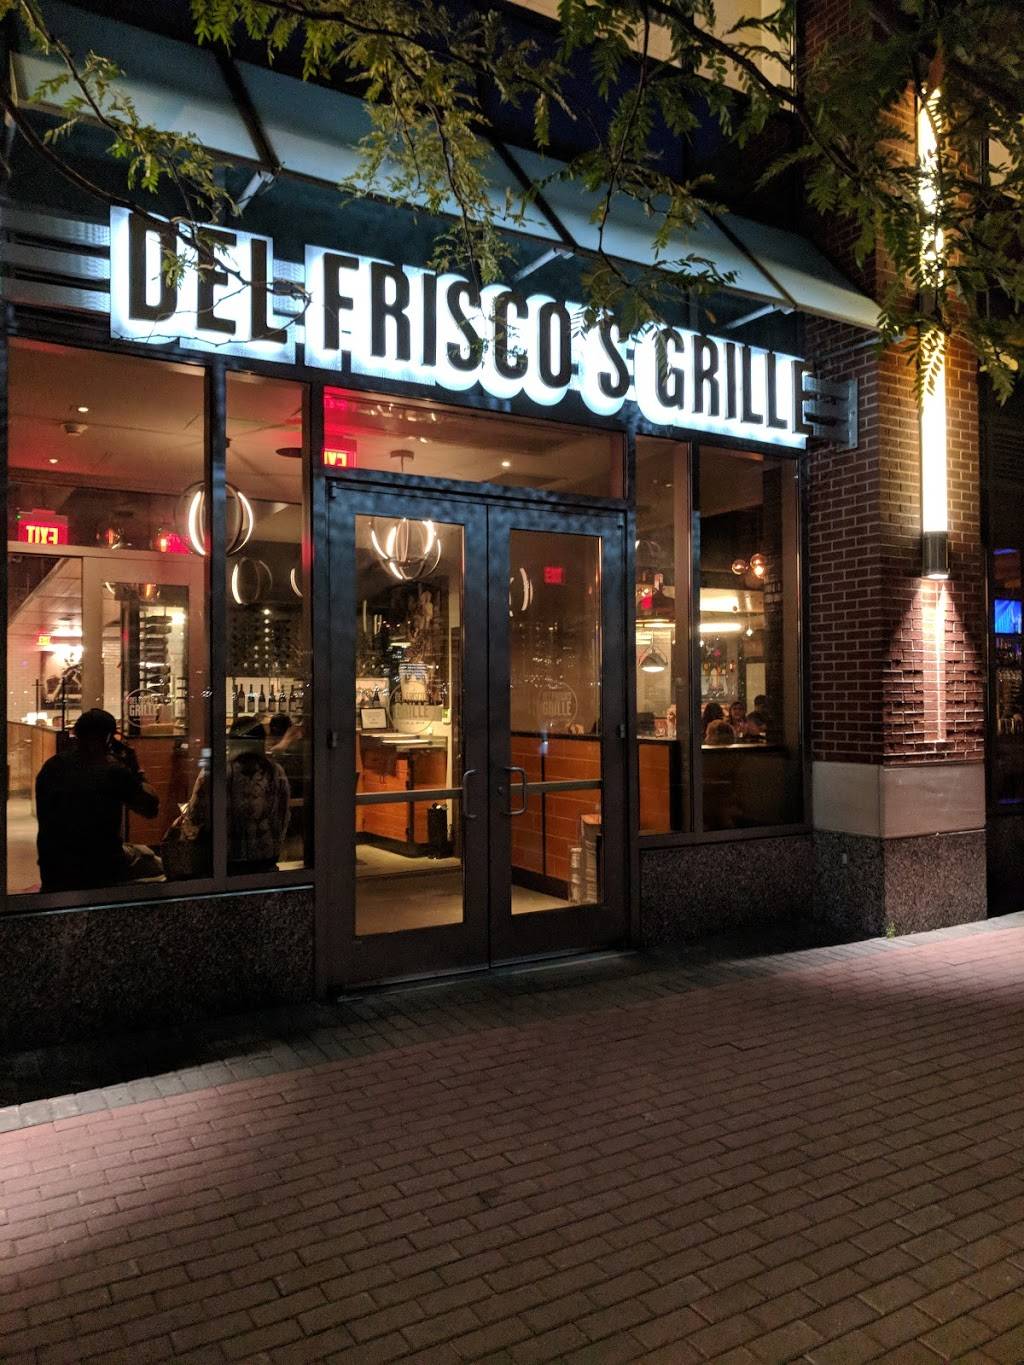 Del Friscos Grille | restaurant | 221 River St, Hoboken, NJ 07030, USA | 2016530195 OR +1 201-653-0195